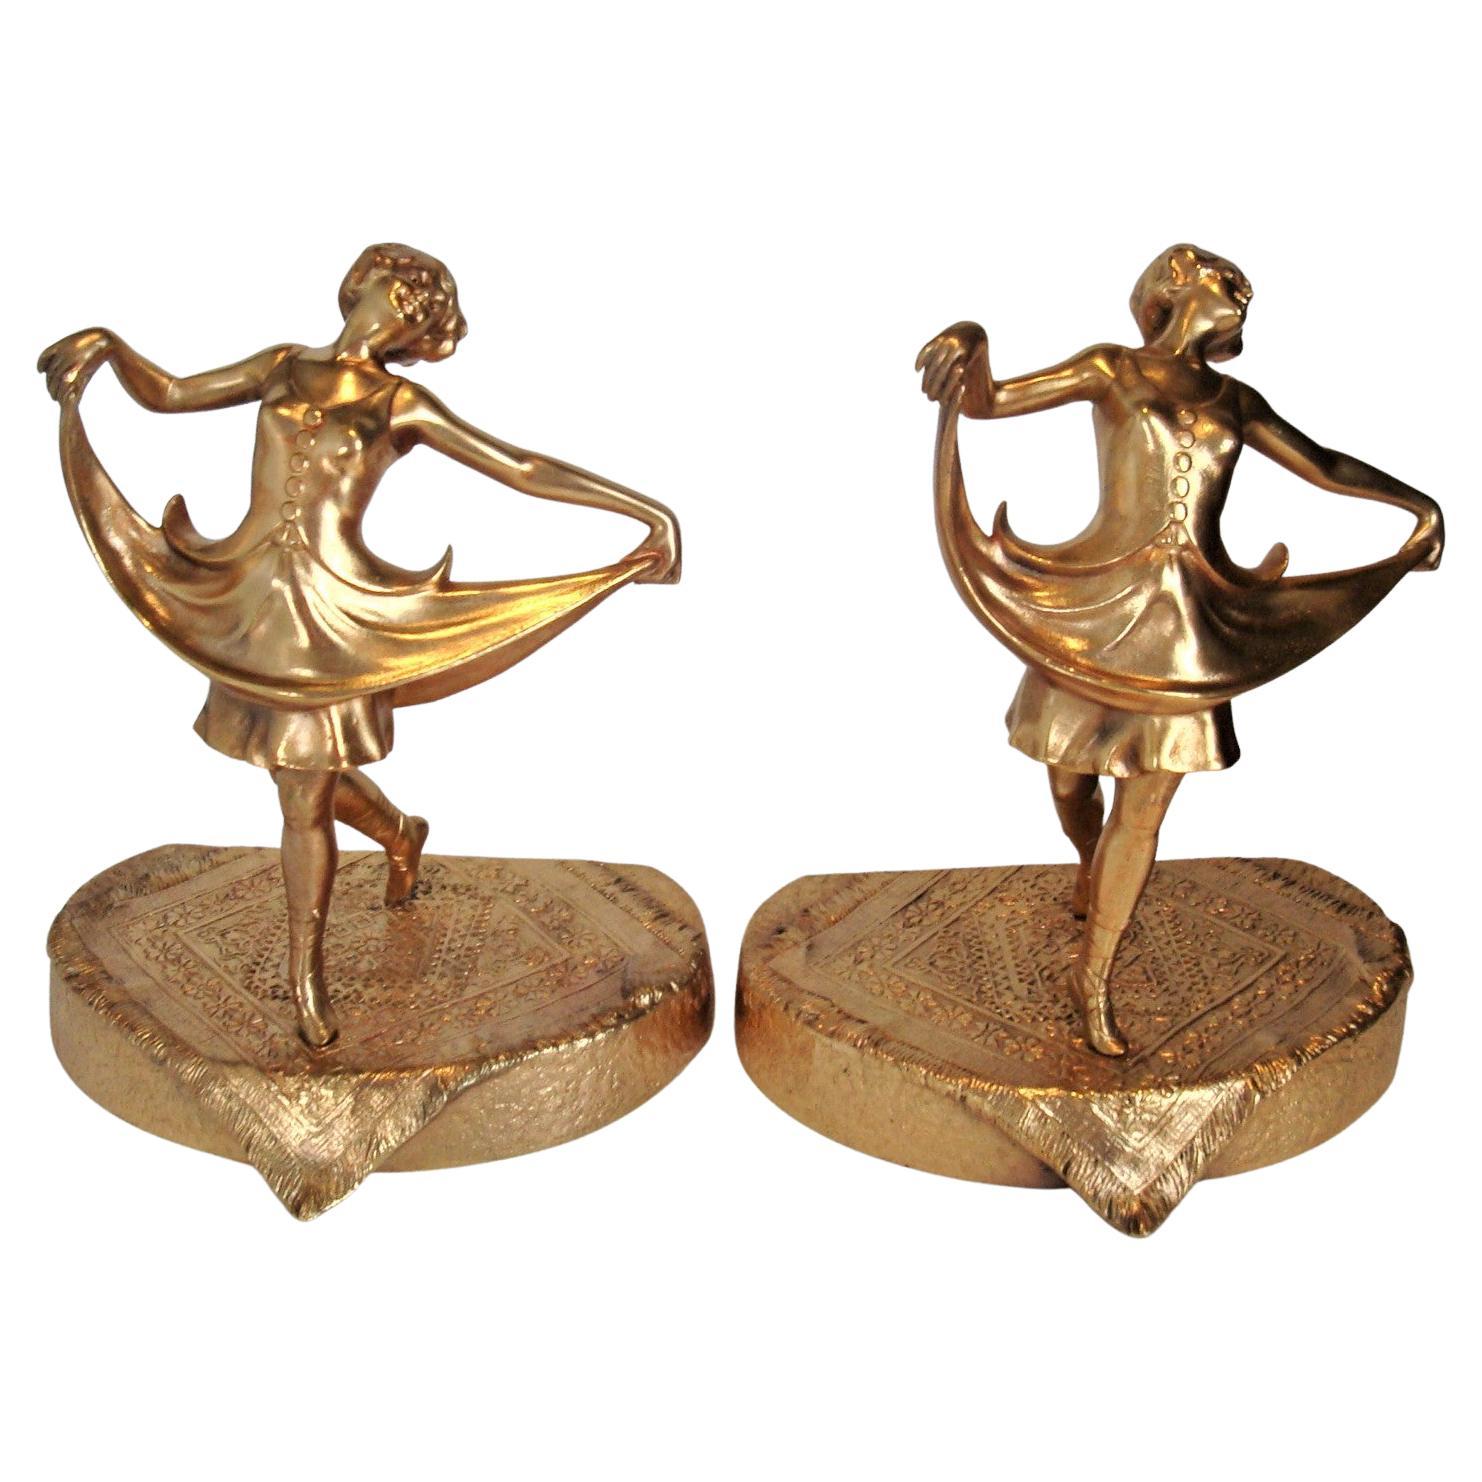 Anton Chotka Vergoldete Bronze Ballett-Tänzer-Buchstützen, Österreich um 1900